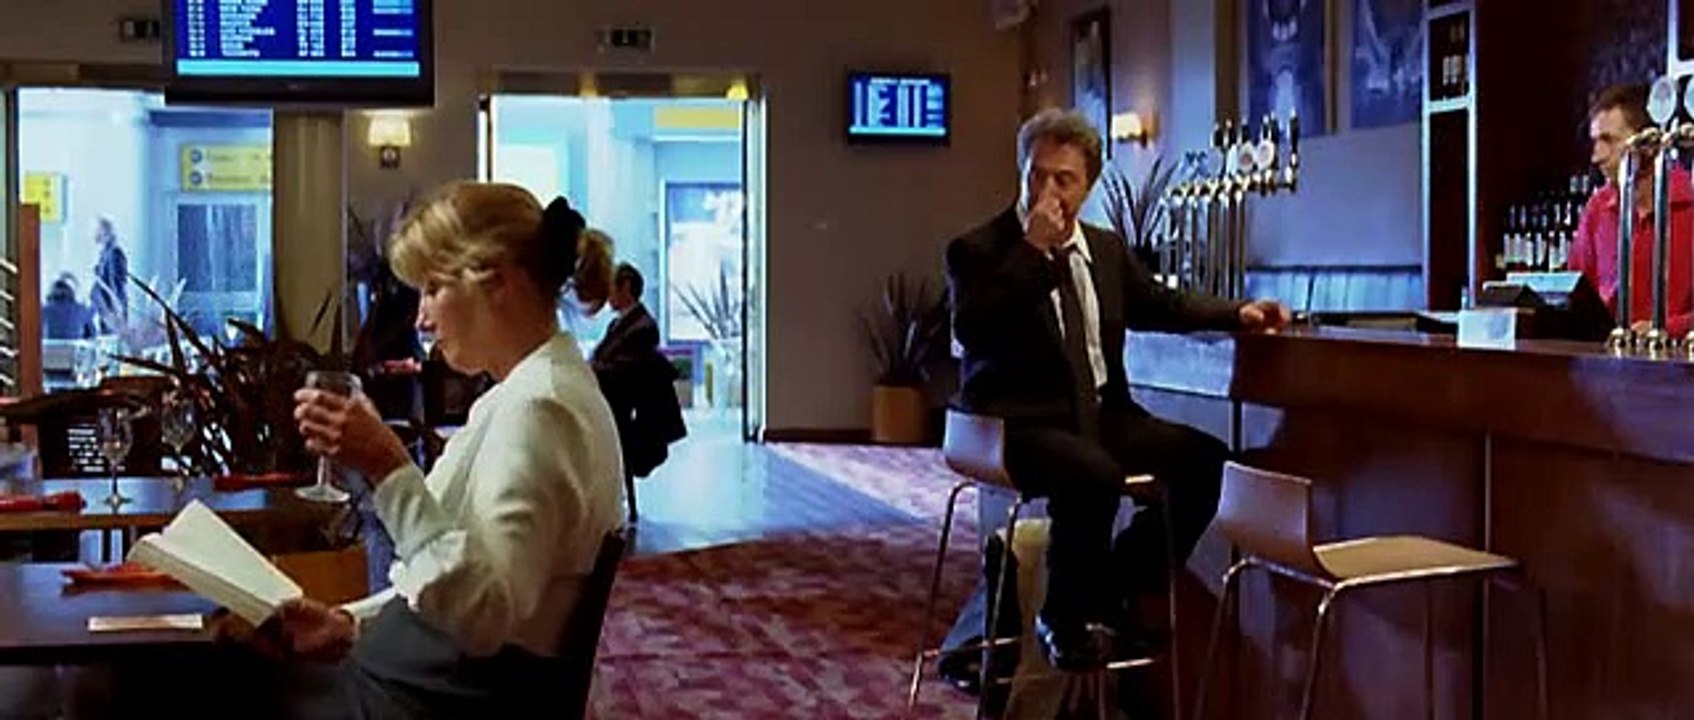 Liebe Auf Den Zweiten Blick Film Trailer (2008)